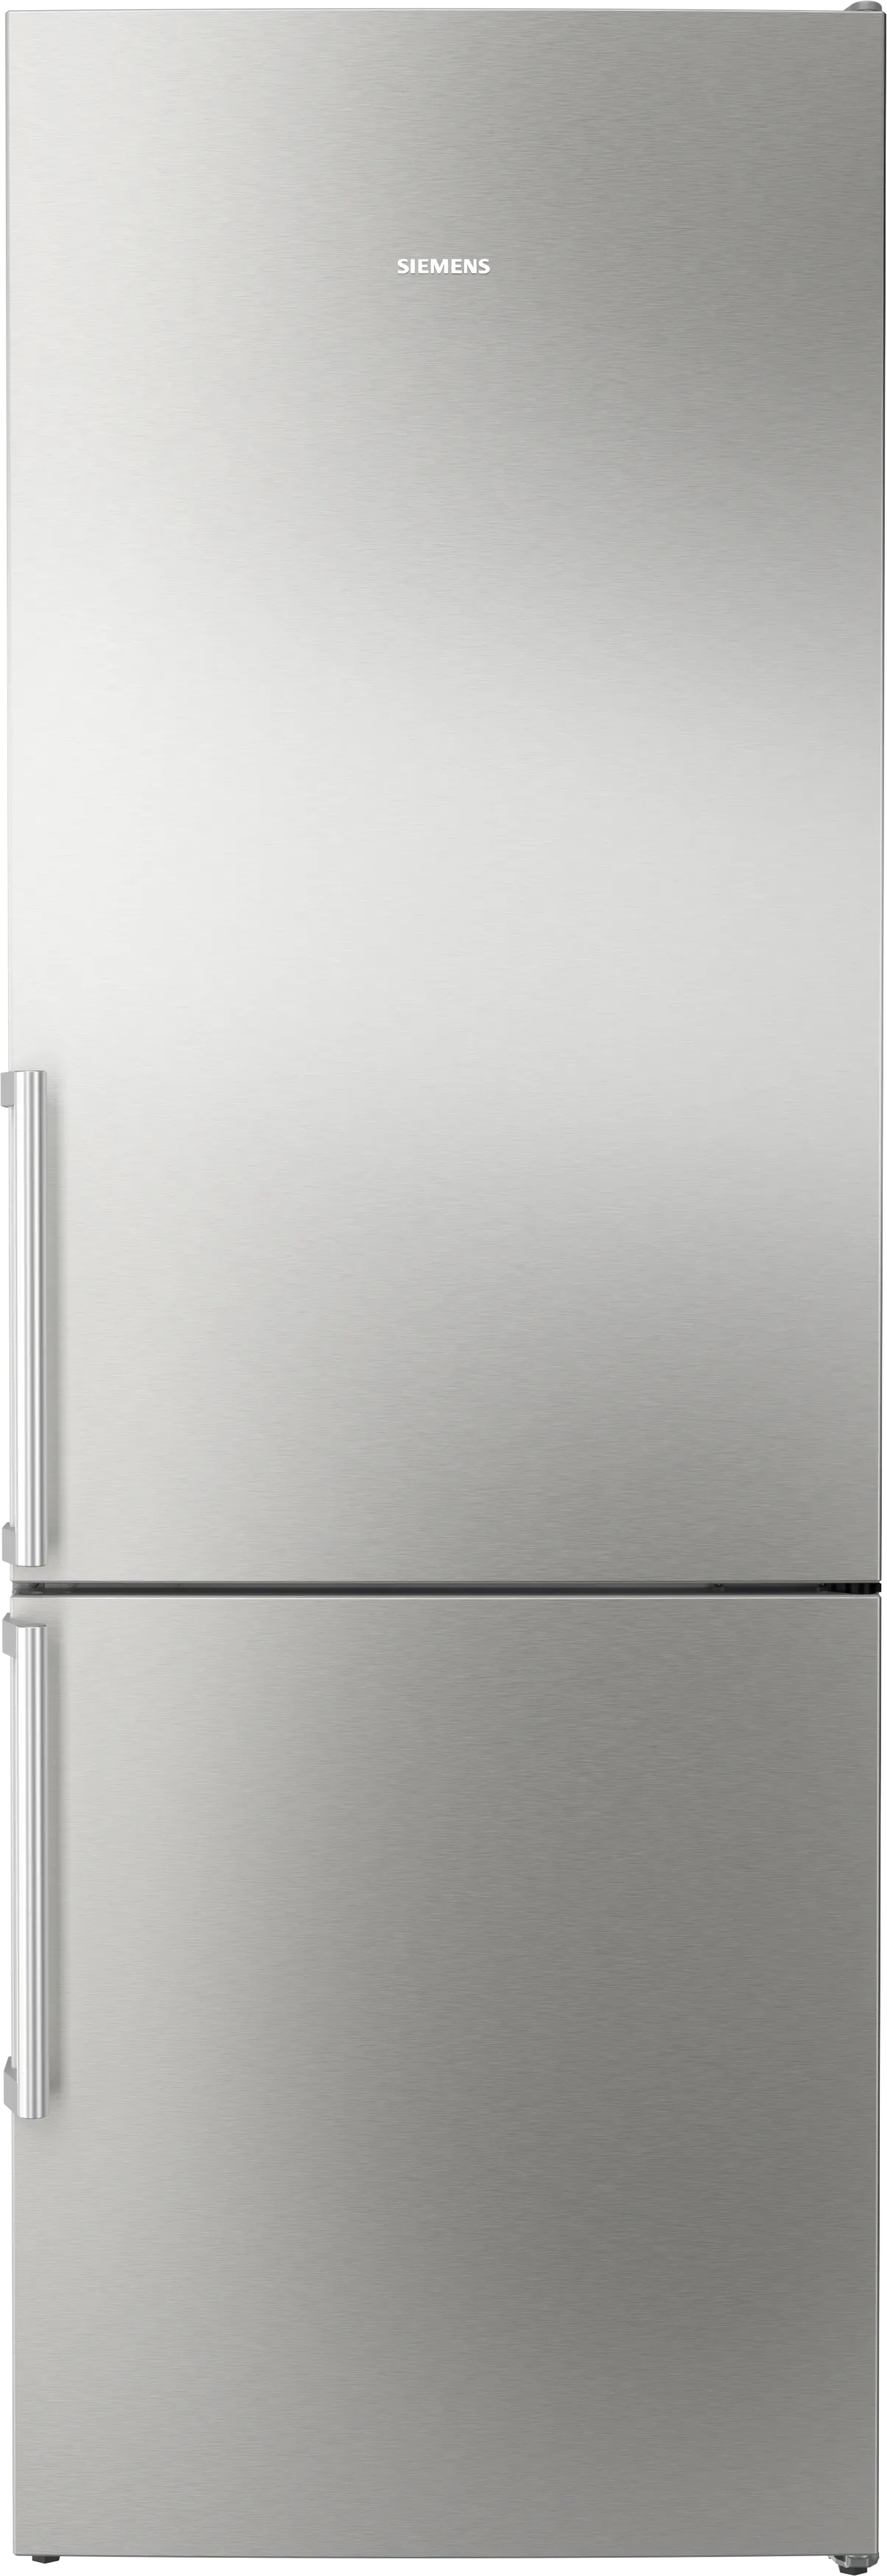 iQ300 Freistehende Kühl-Gefrier-Kombination mit Gefrierbereich unten 203 x 70 cm Gebürsteter Stahl mit antiFingerprint 